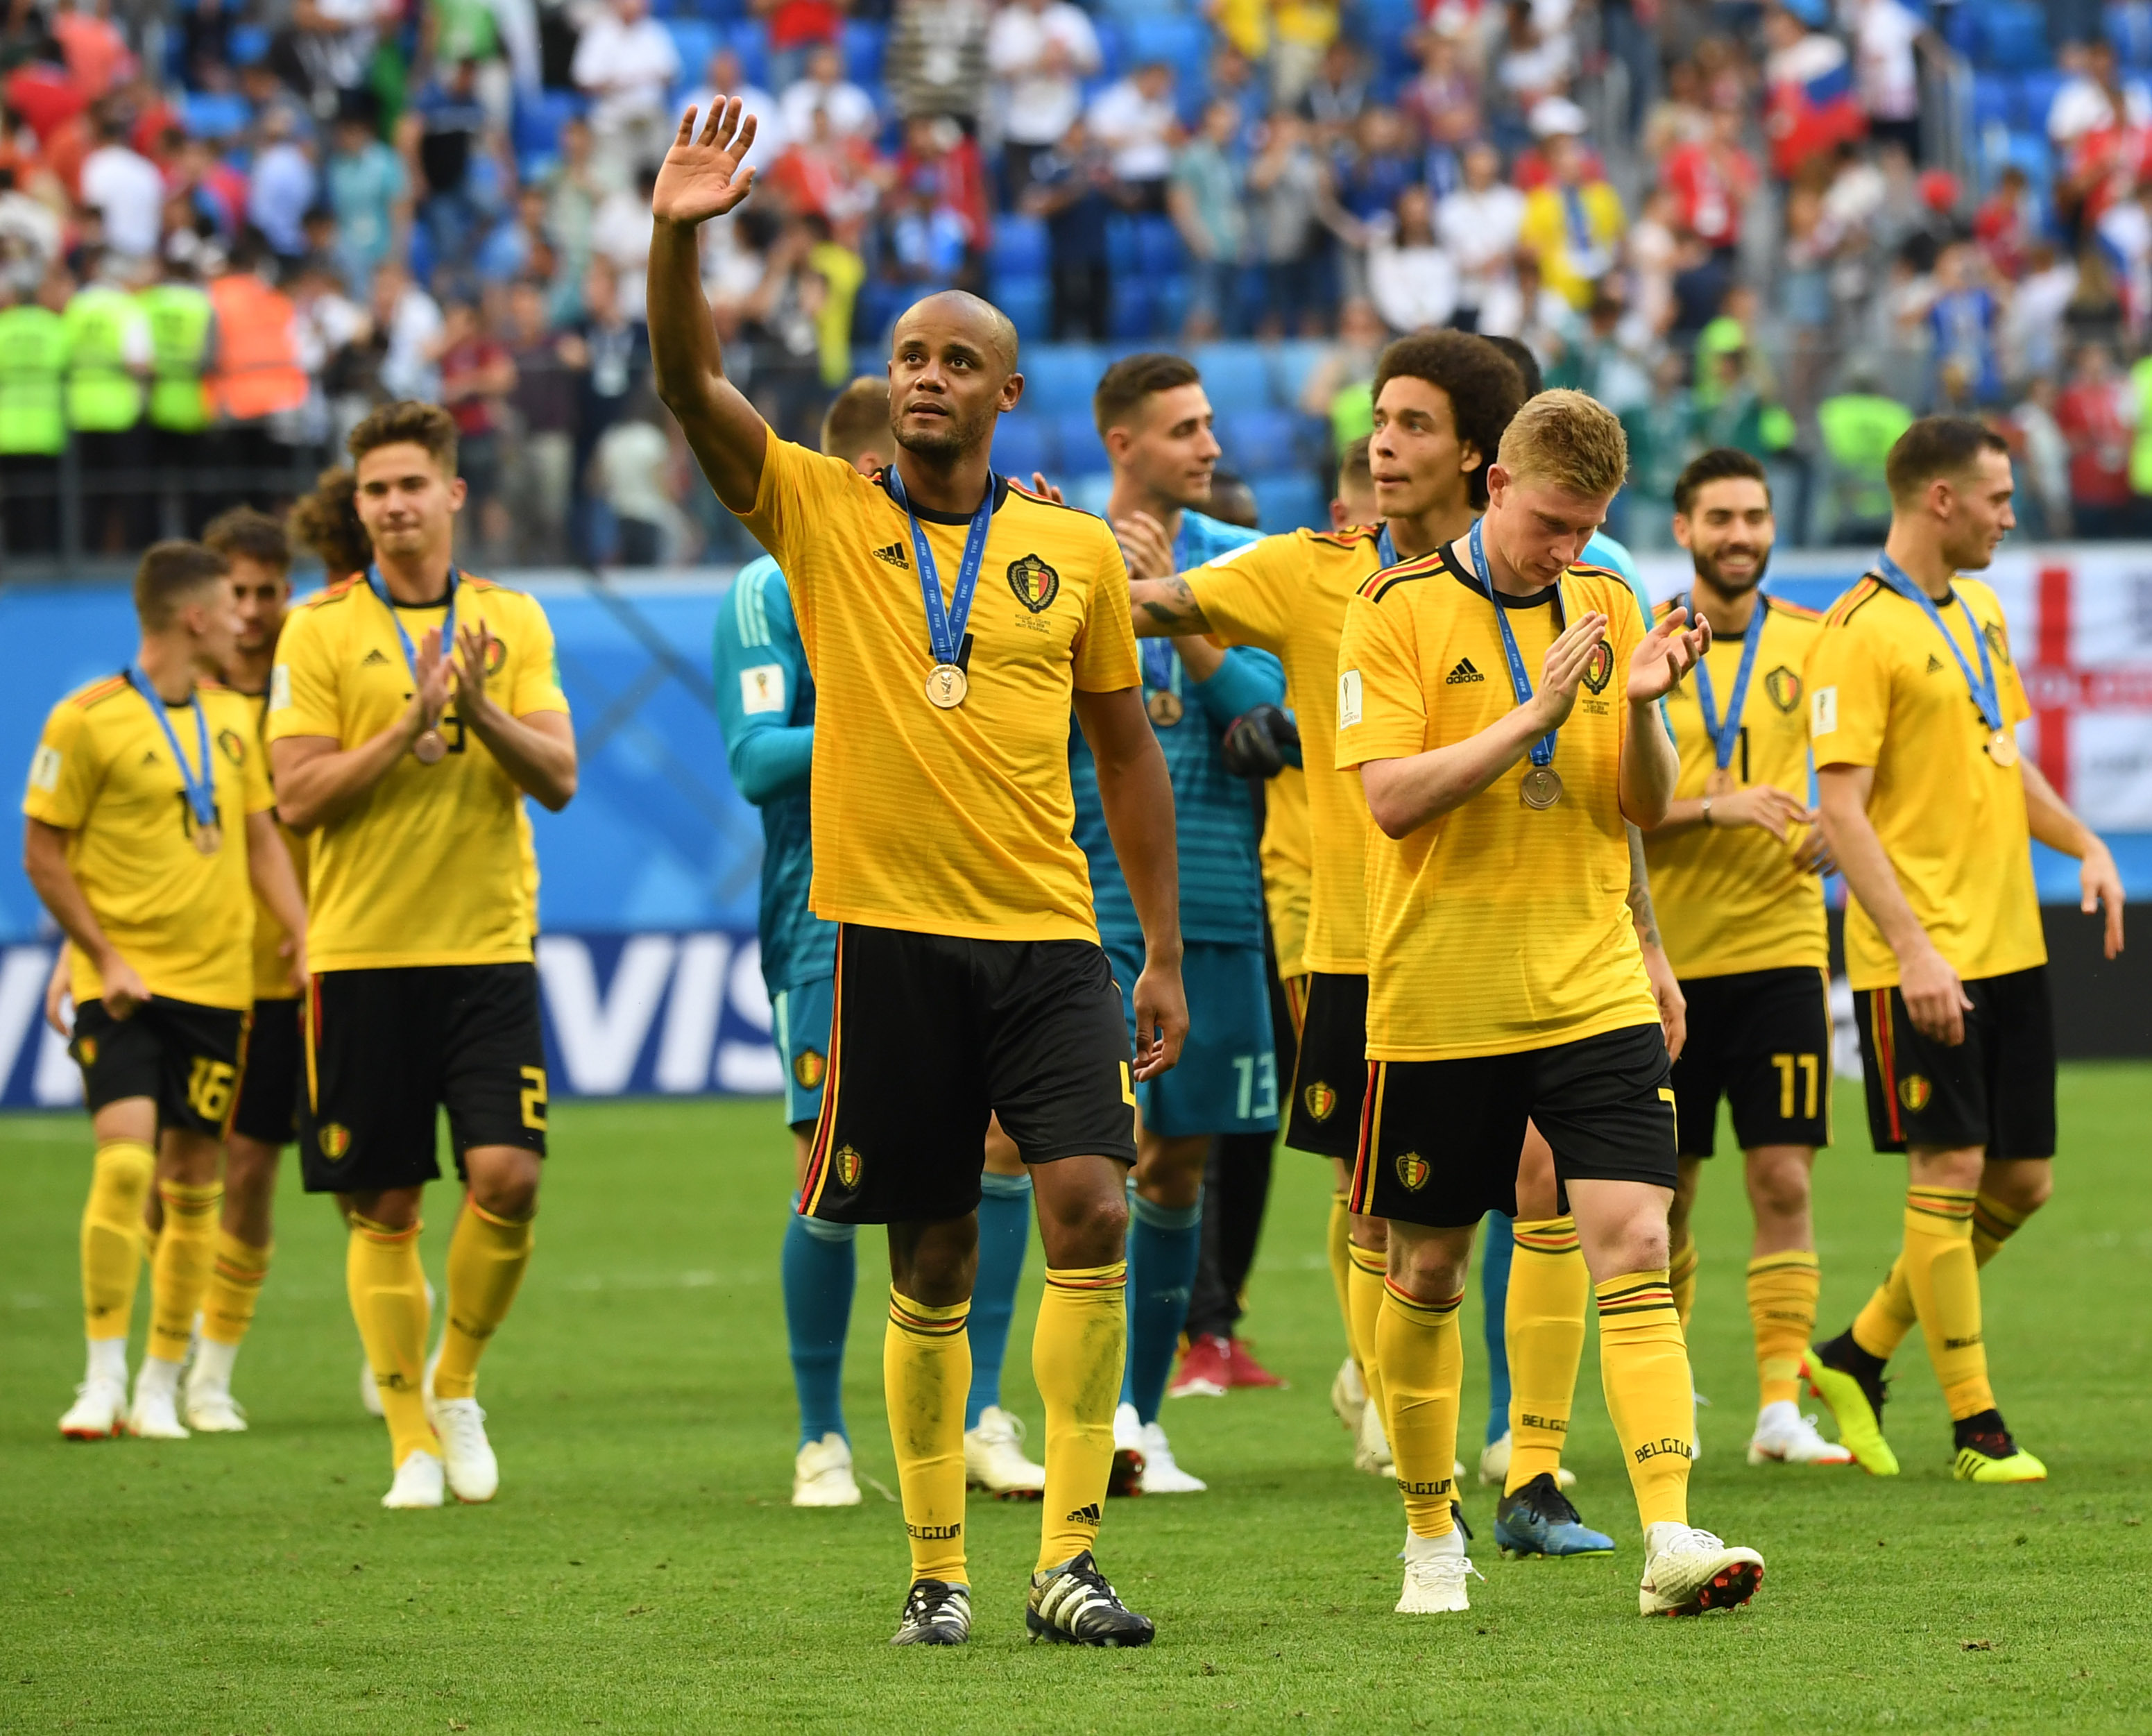 【天下杯】梅西失点阿根廷1-1冰岛 克罗地亚万博世界杯版2-0尼日利亚 法国2-1澳大利亚 丹麦1-0秘鲁(图1)